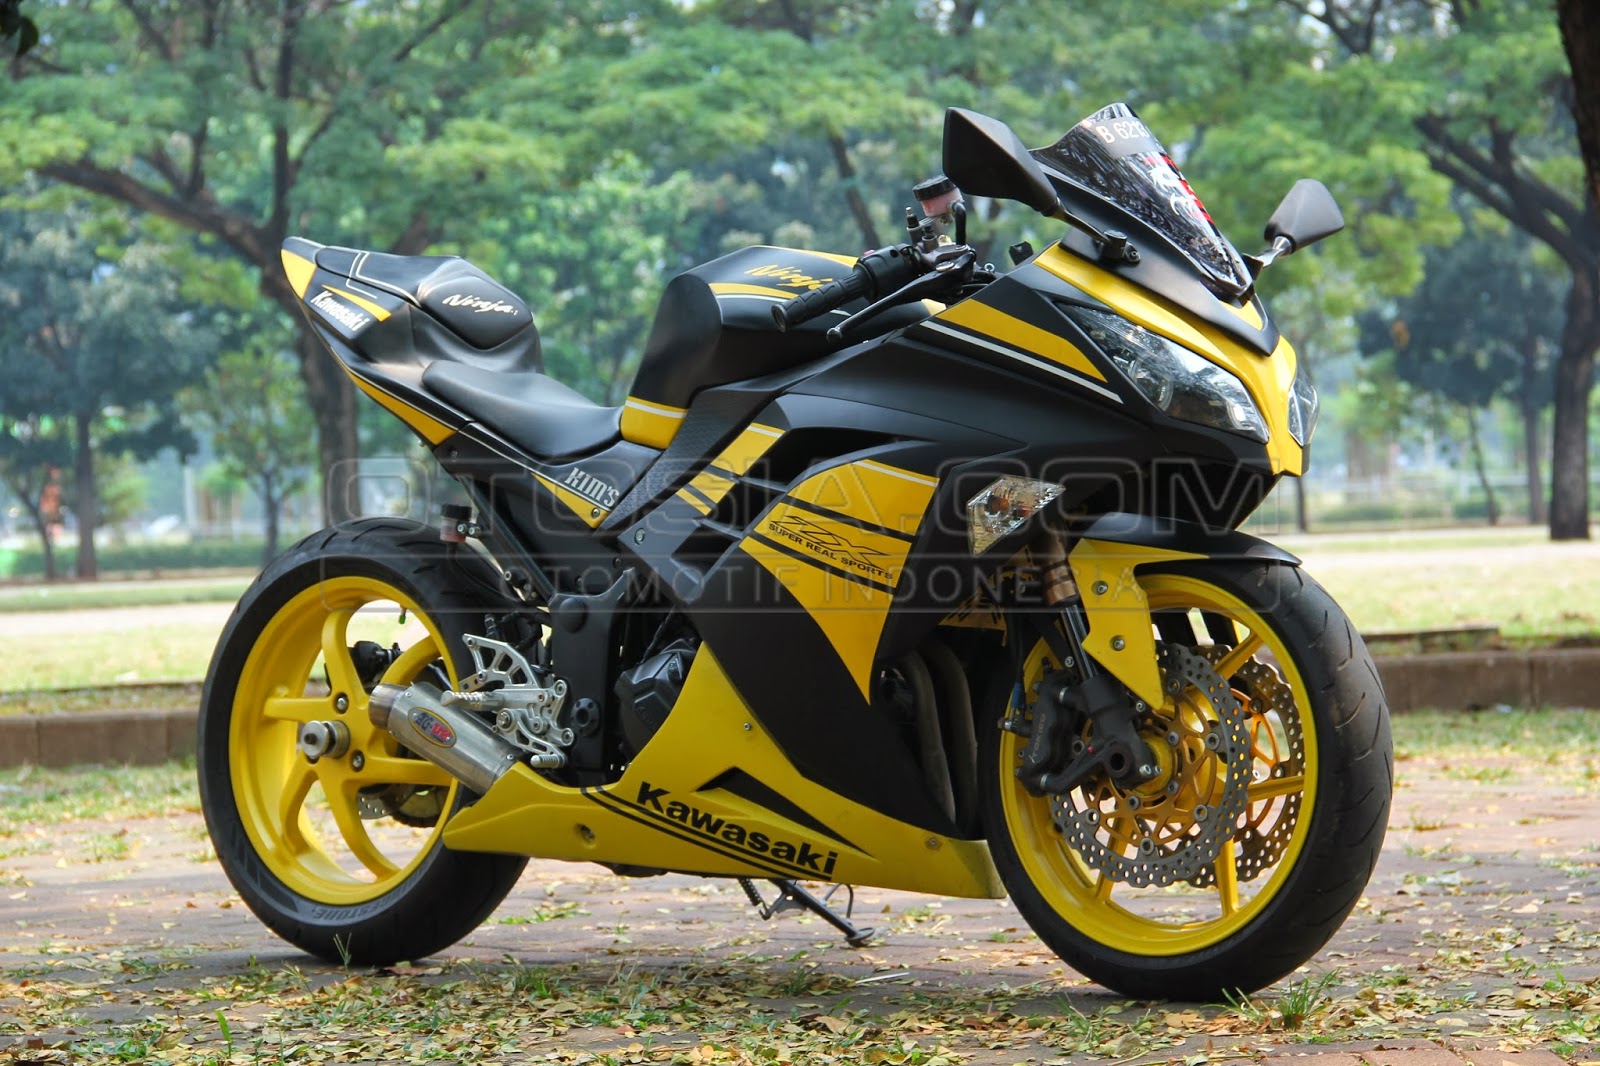 Foto Foto Desain Modif Kawasaki Ninja 250 Terbaru 2014 Gambar